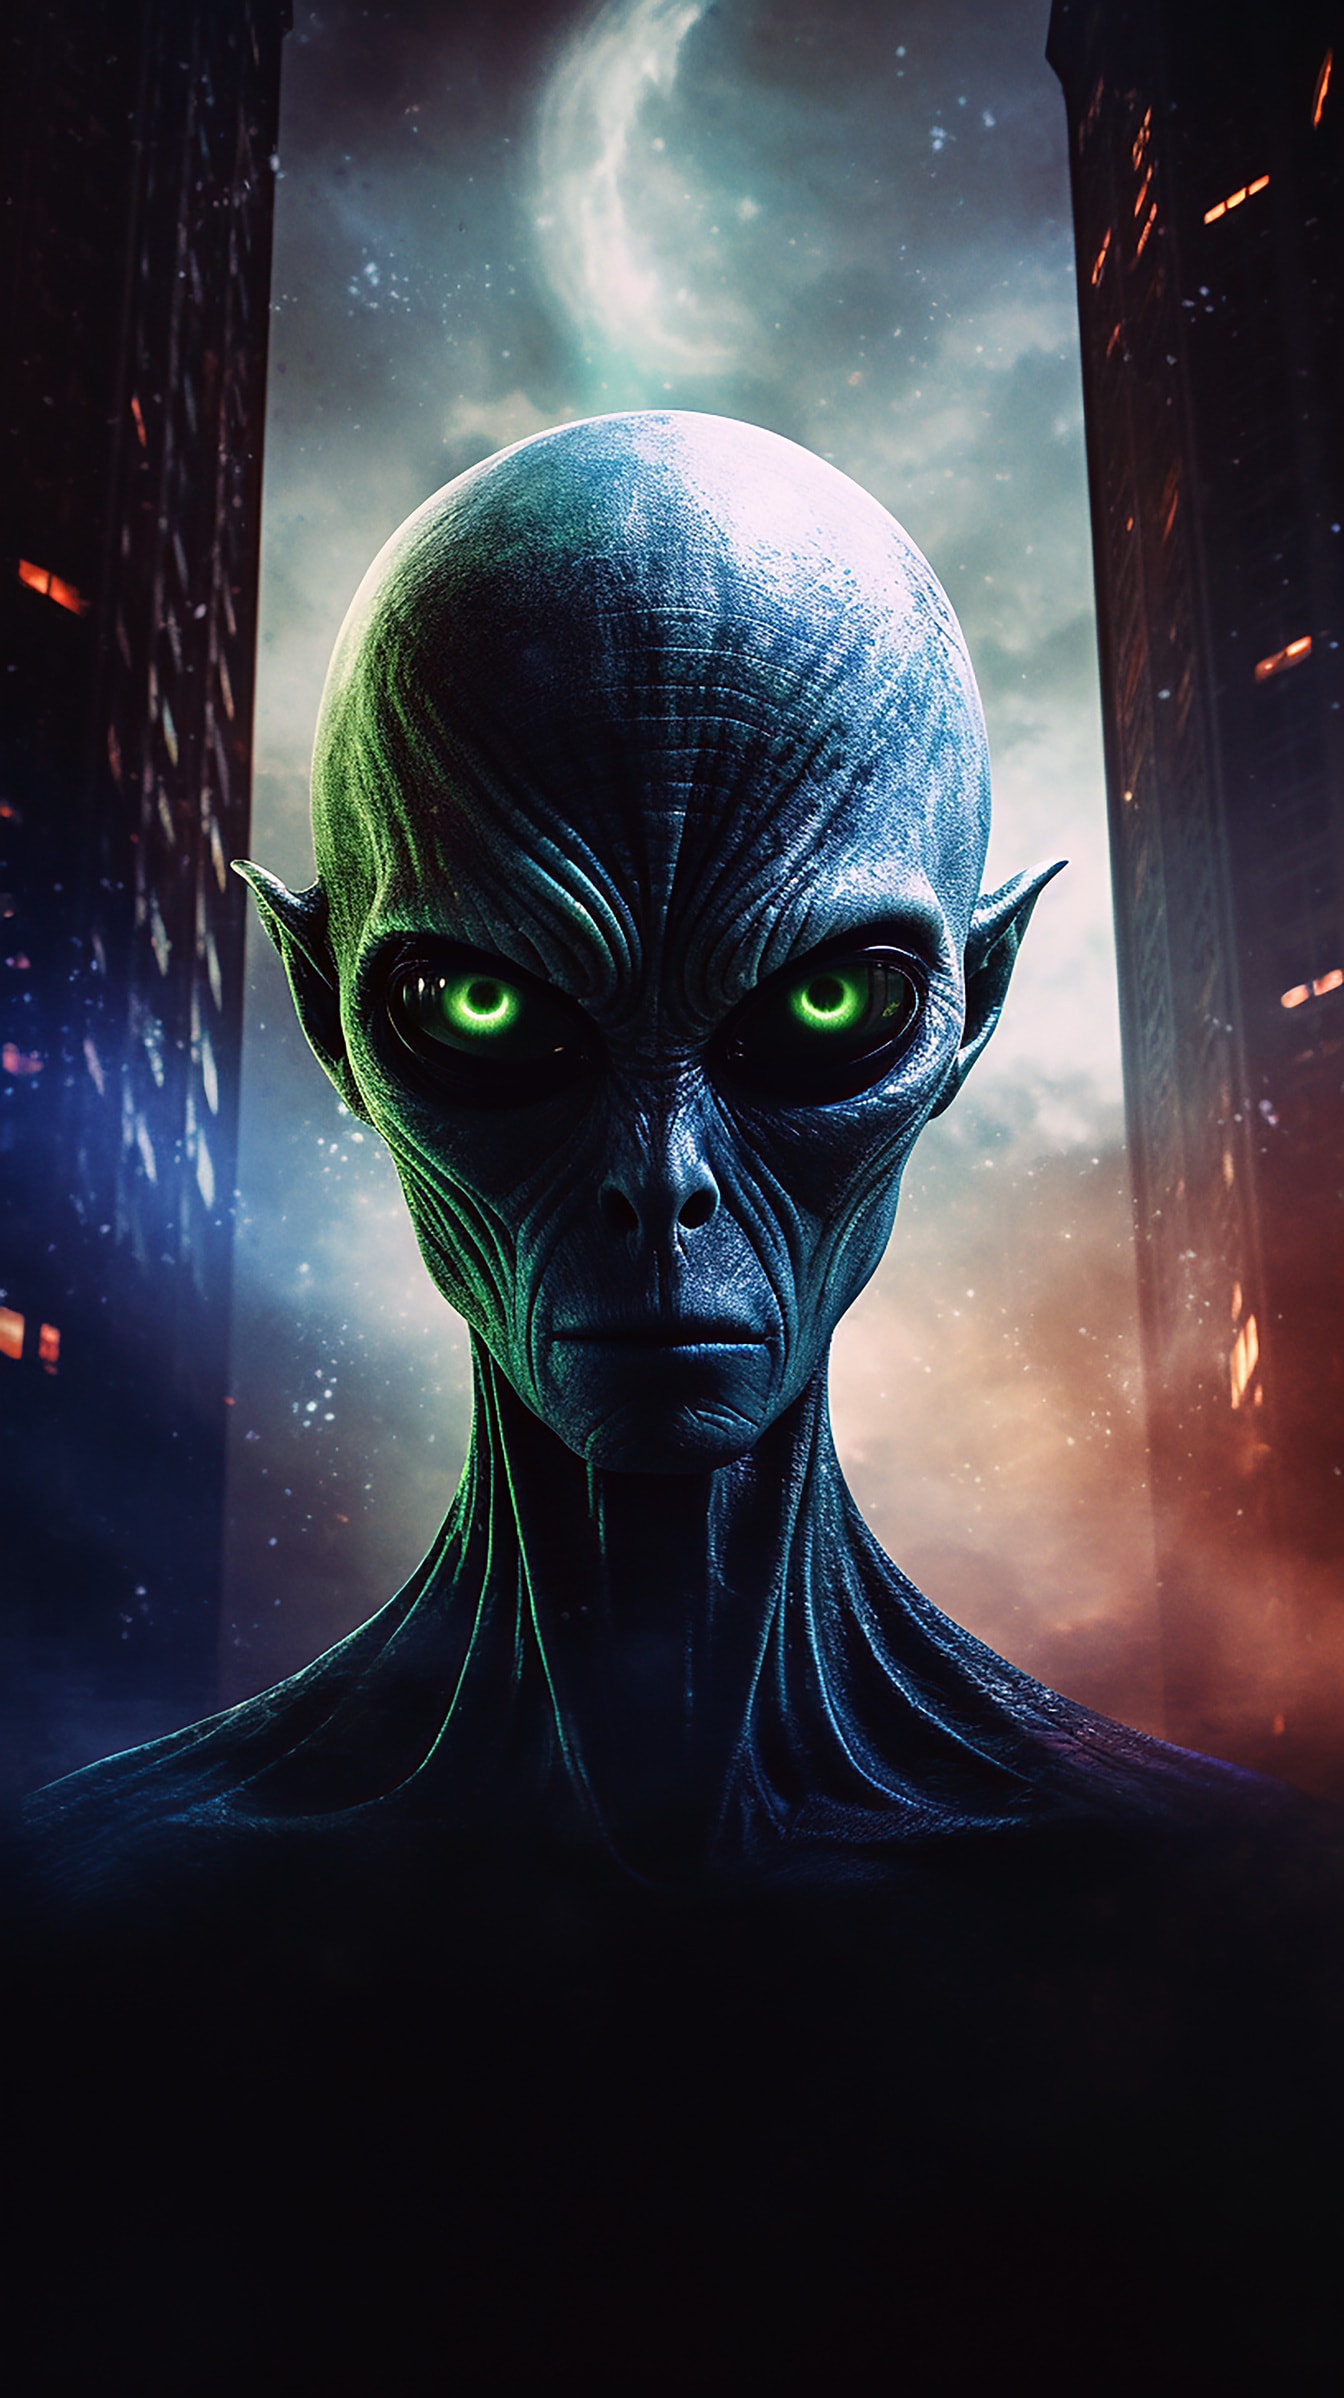 Porträt einer außerirdischen Kreatur mit dunkelgrünen Augen